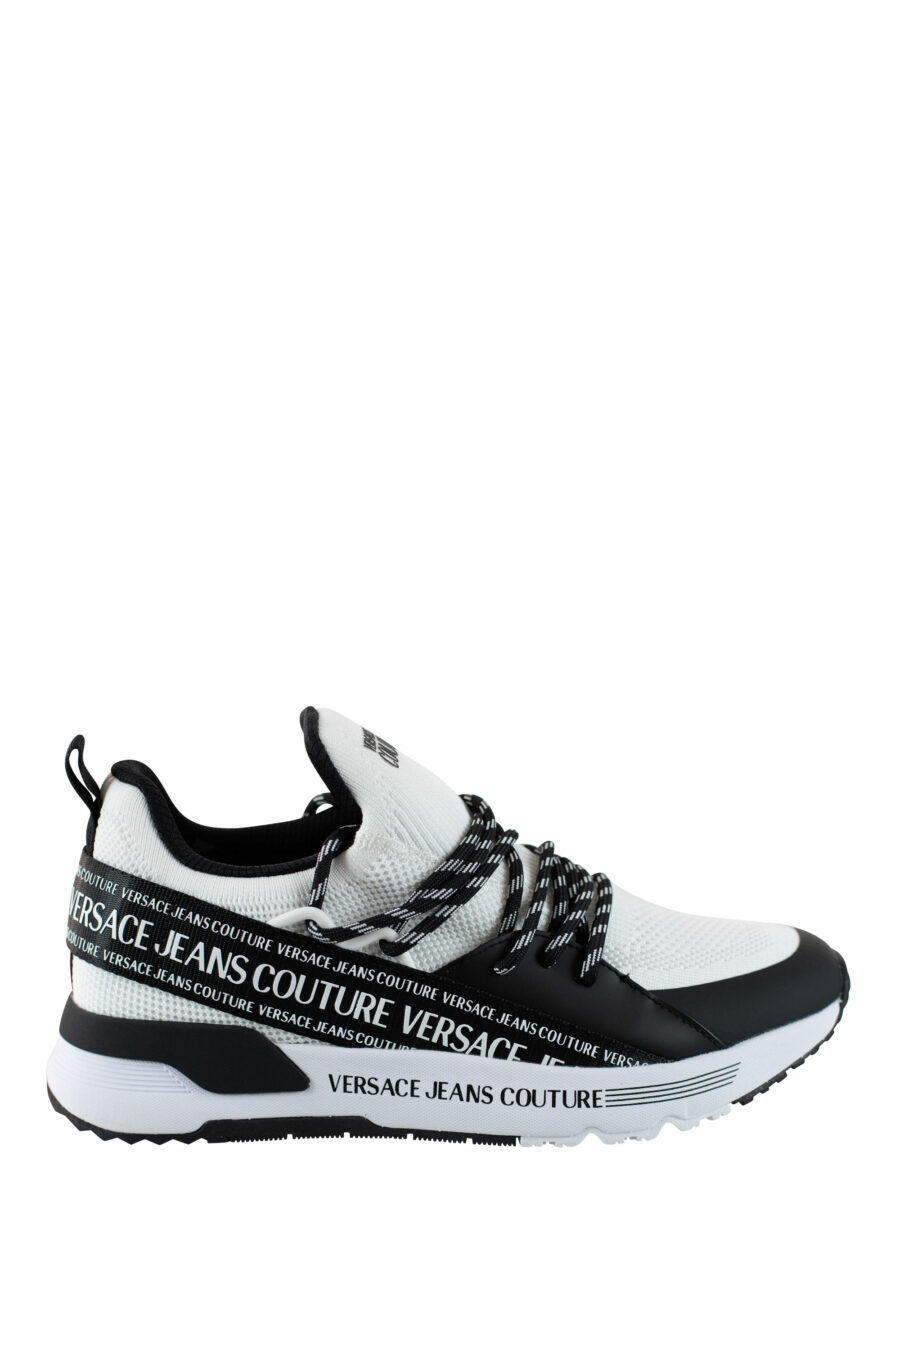 Zapatillas blancas y negras "dynamic" estilo calcetin con logo en cinta - IMG 4514